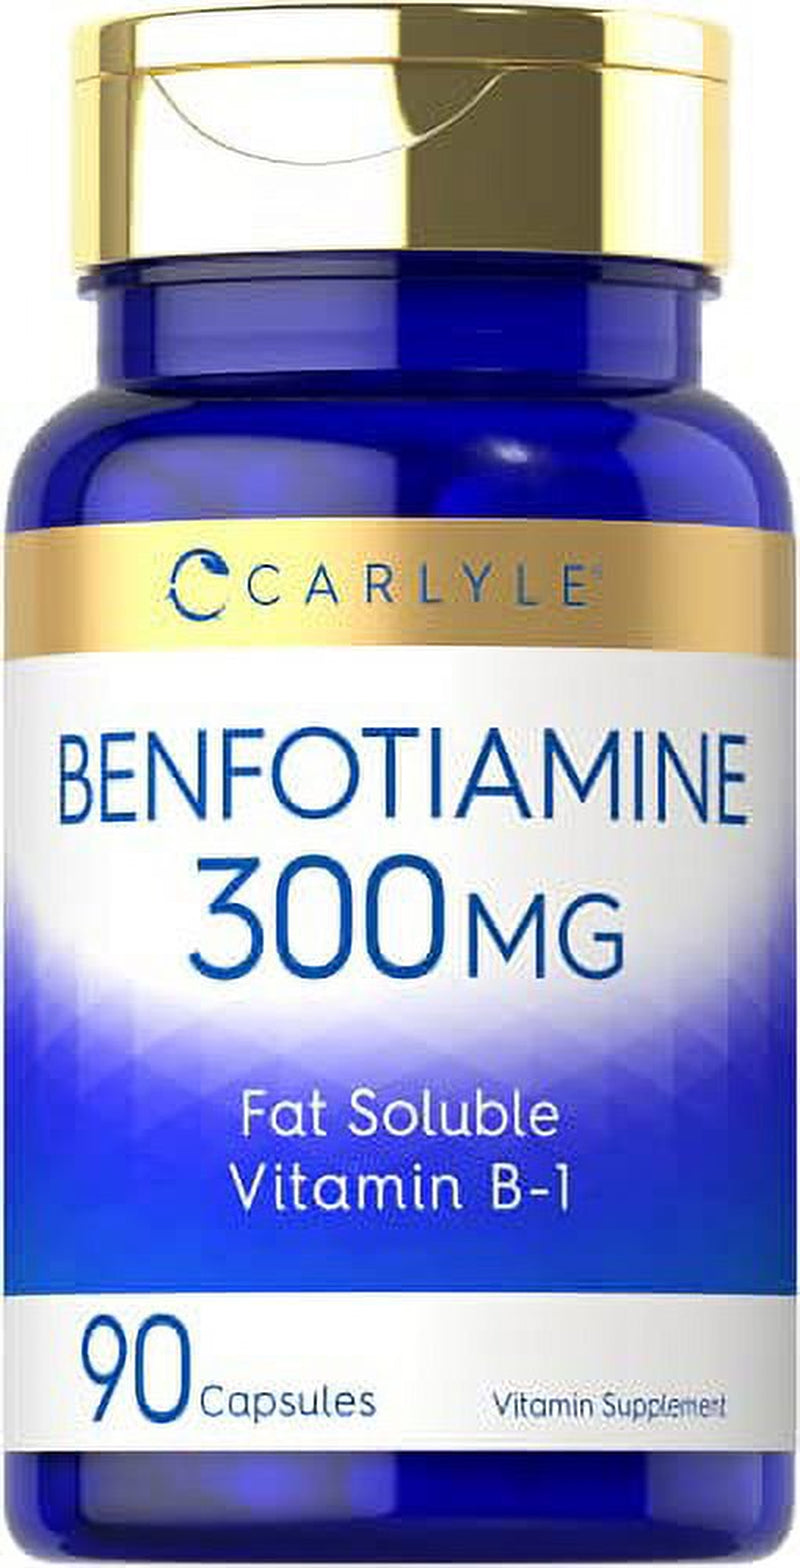 Benfotiamine 300Mg | 90 Capsules | Fat Soluble Vitamin B-1 | Non-Gmo, Gluten Free | by Carlyle